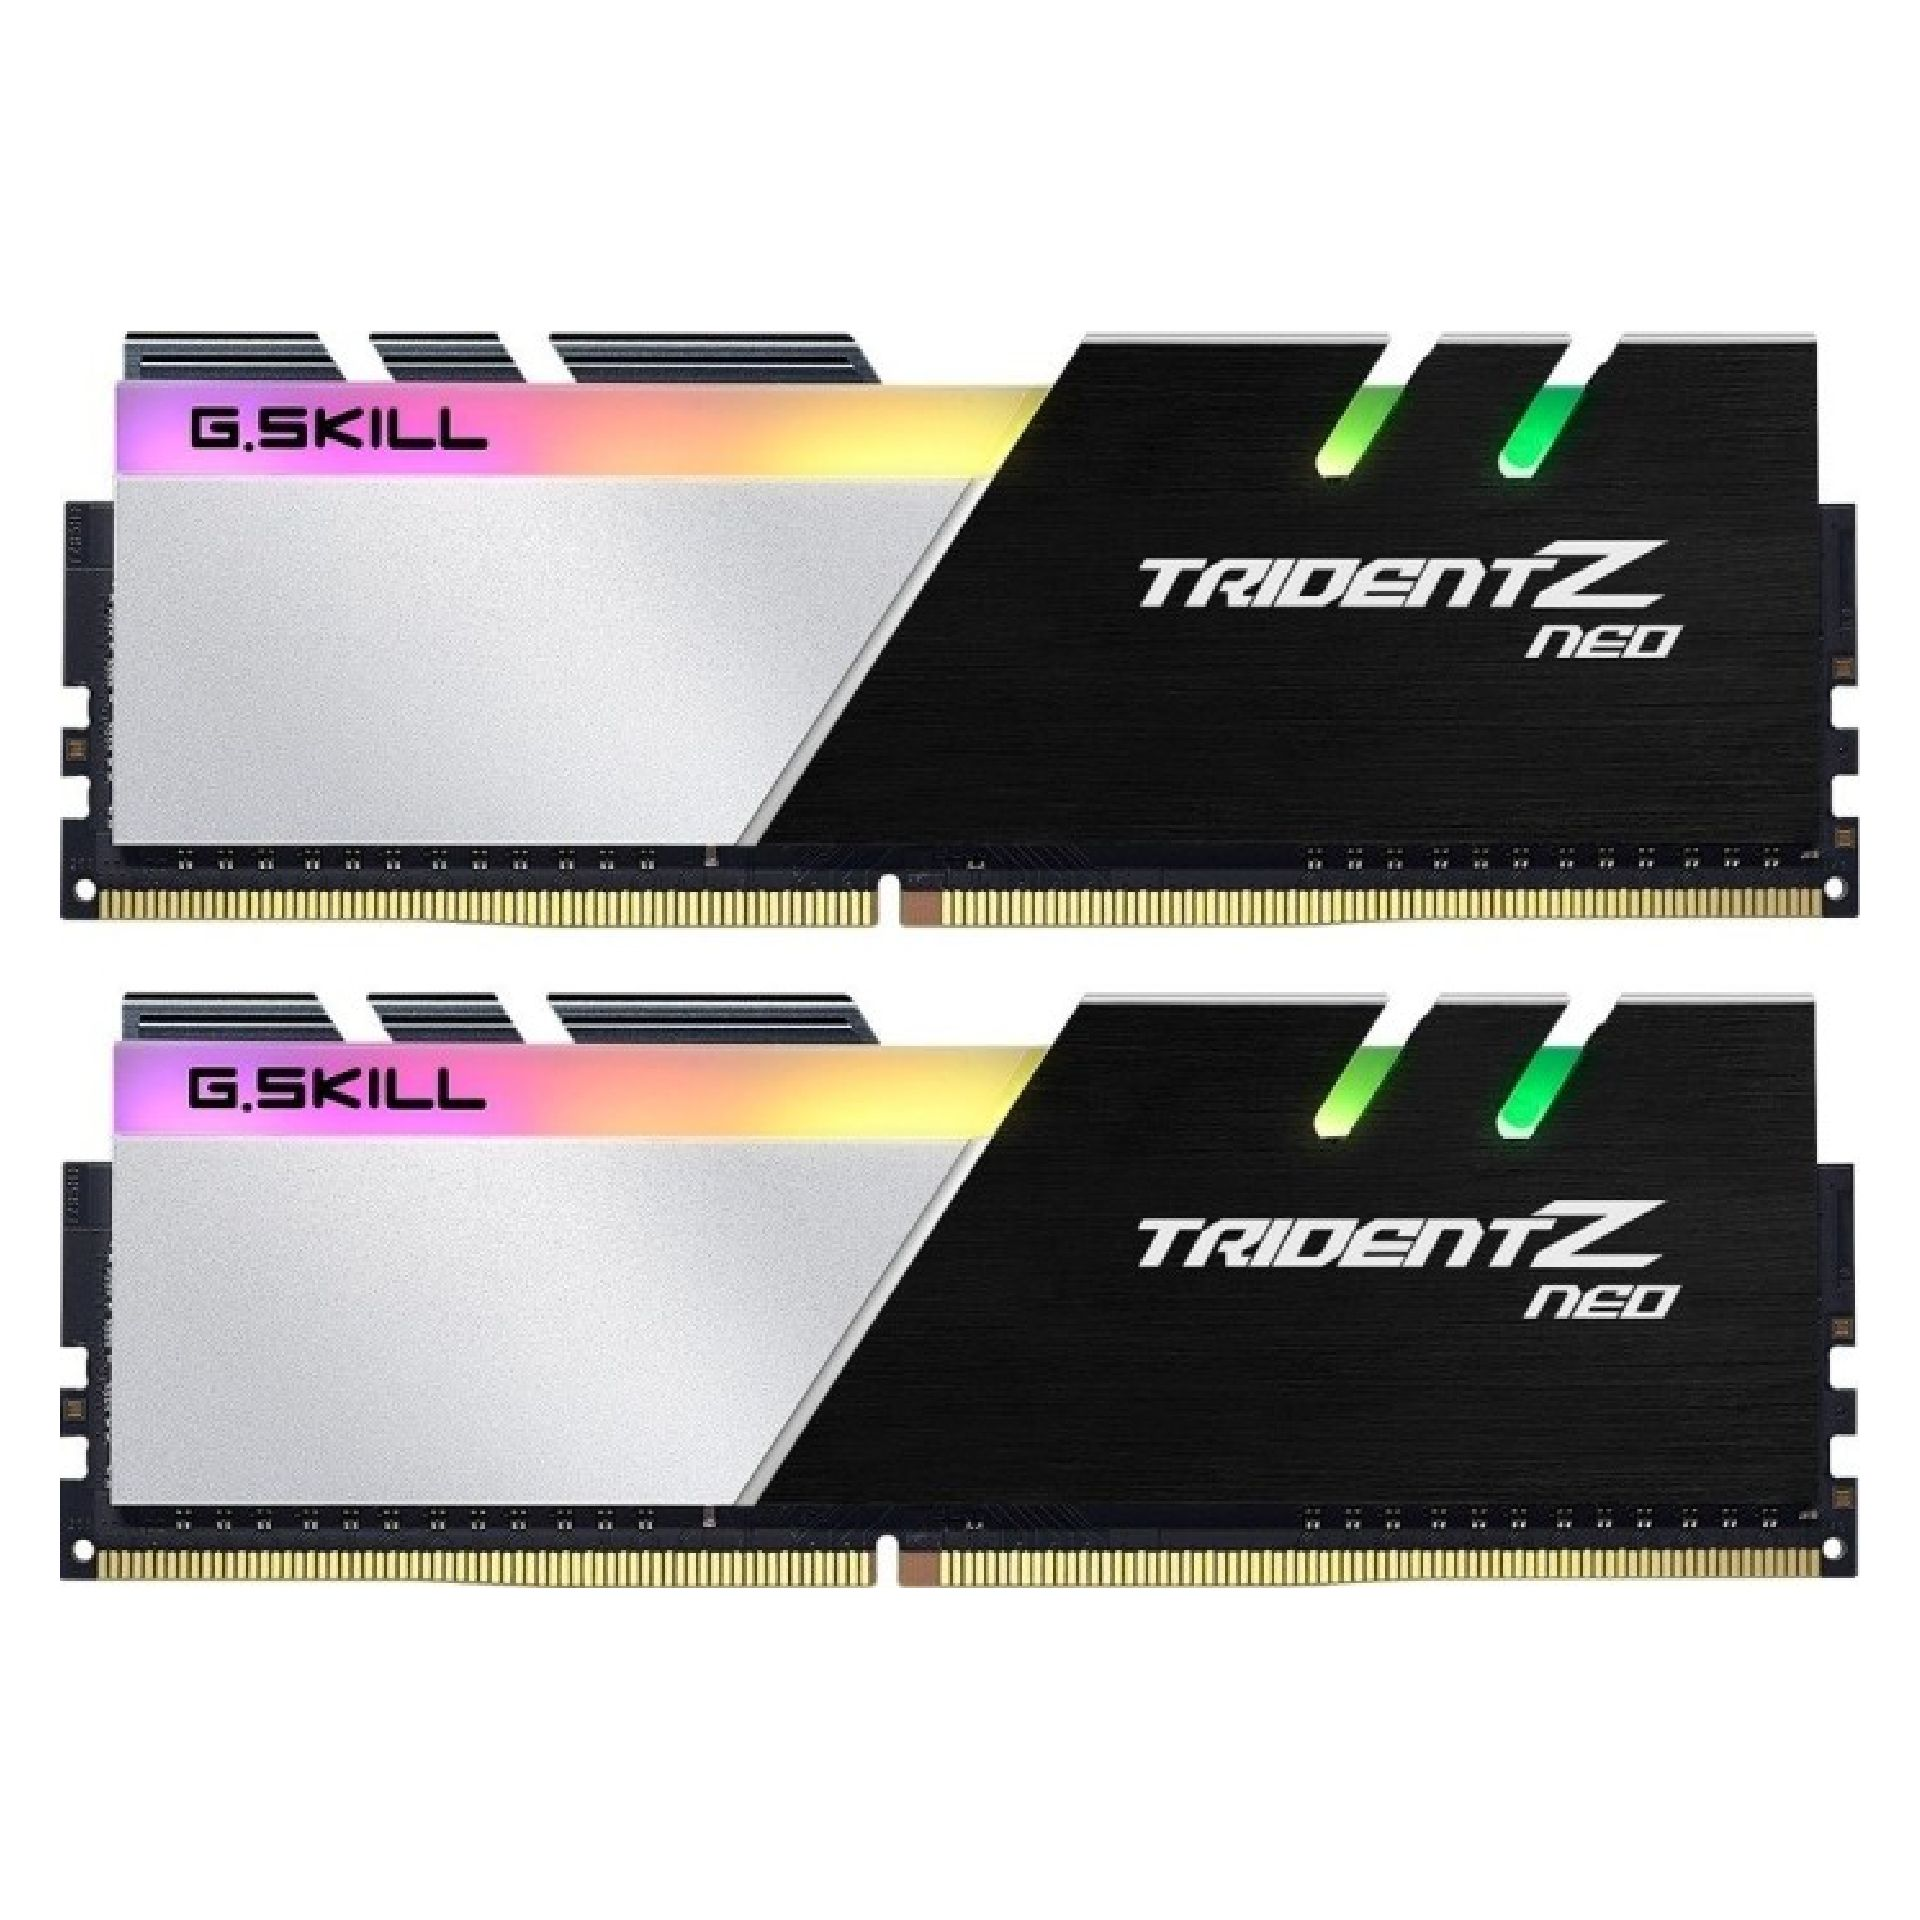 G.SKILL 2x16GB 1,4V DDR4 18-22-22-42 TridentZ GB 32 Neo Speicher-Kit Z